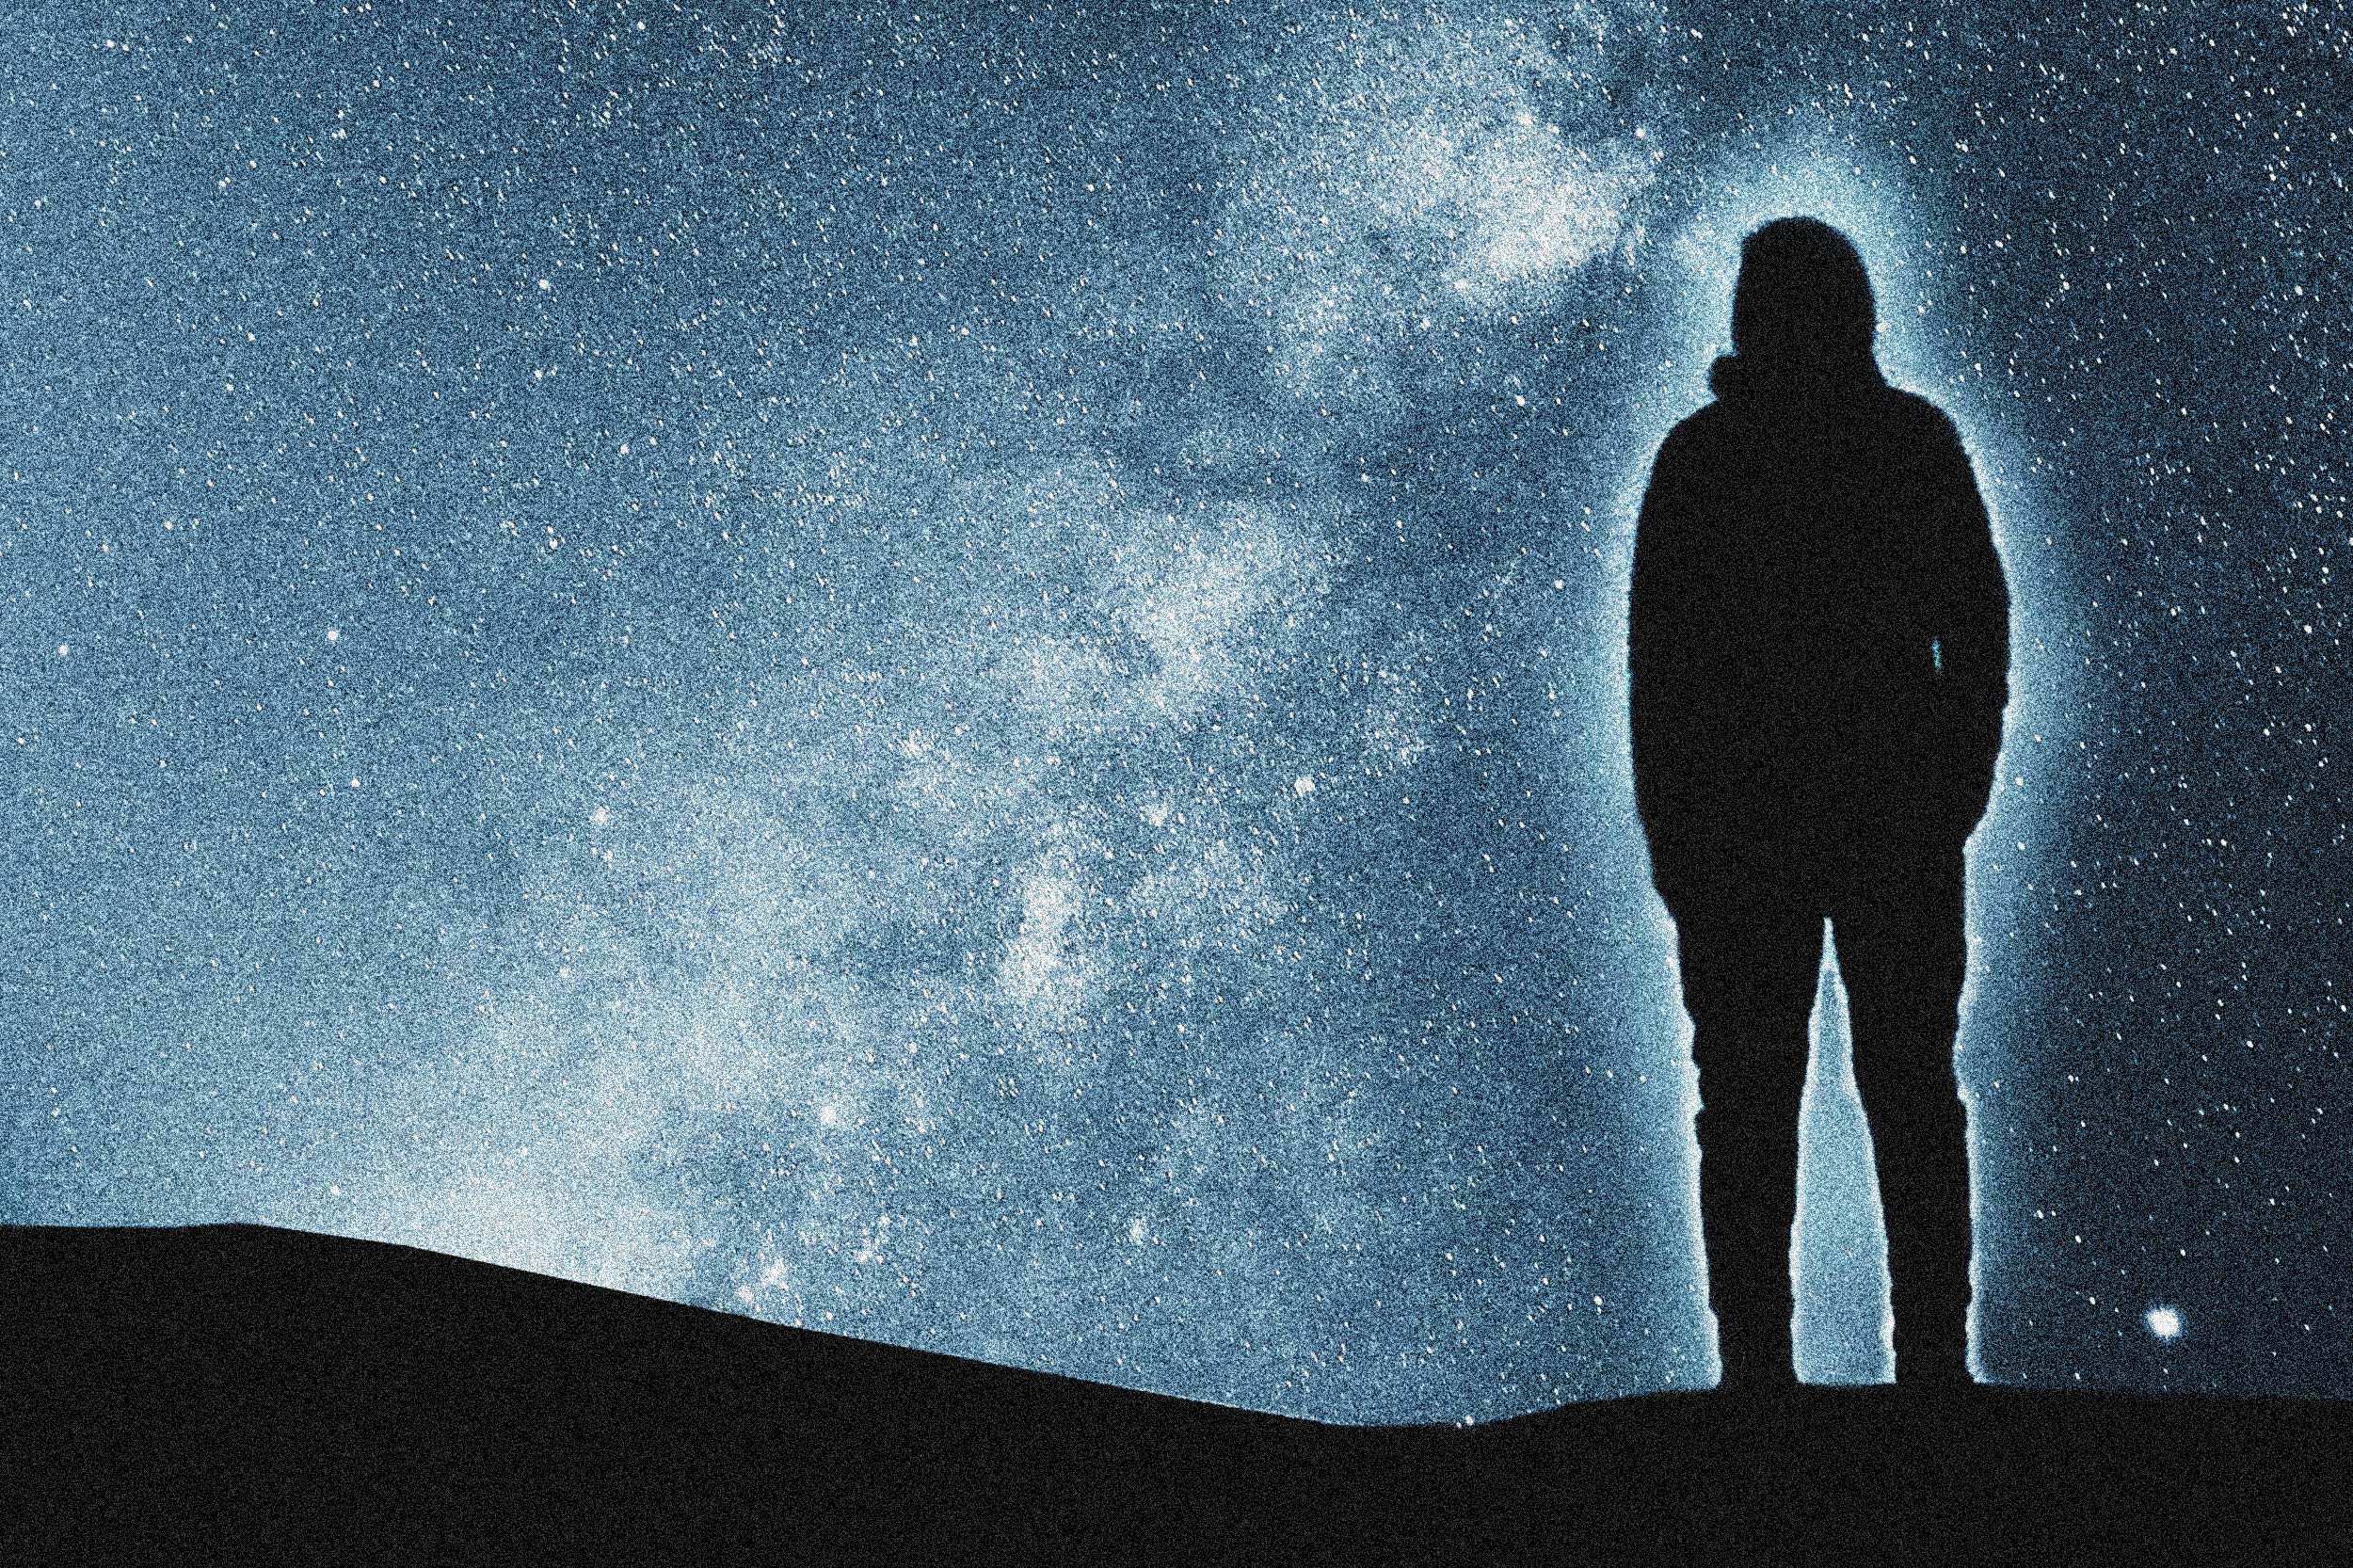 Ein von einer Aura umgebener Mensch schaut nachdenklich in den Sternenhimmel, der einen Teil der Galaxie zeigt.